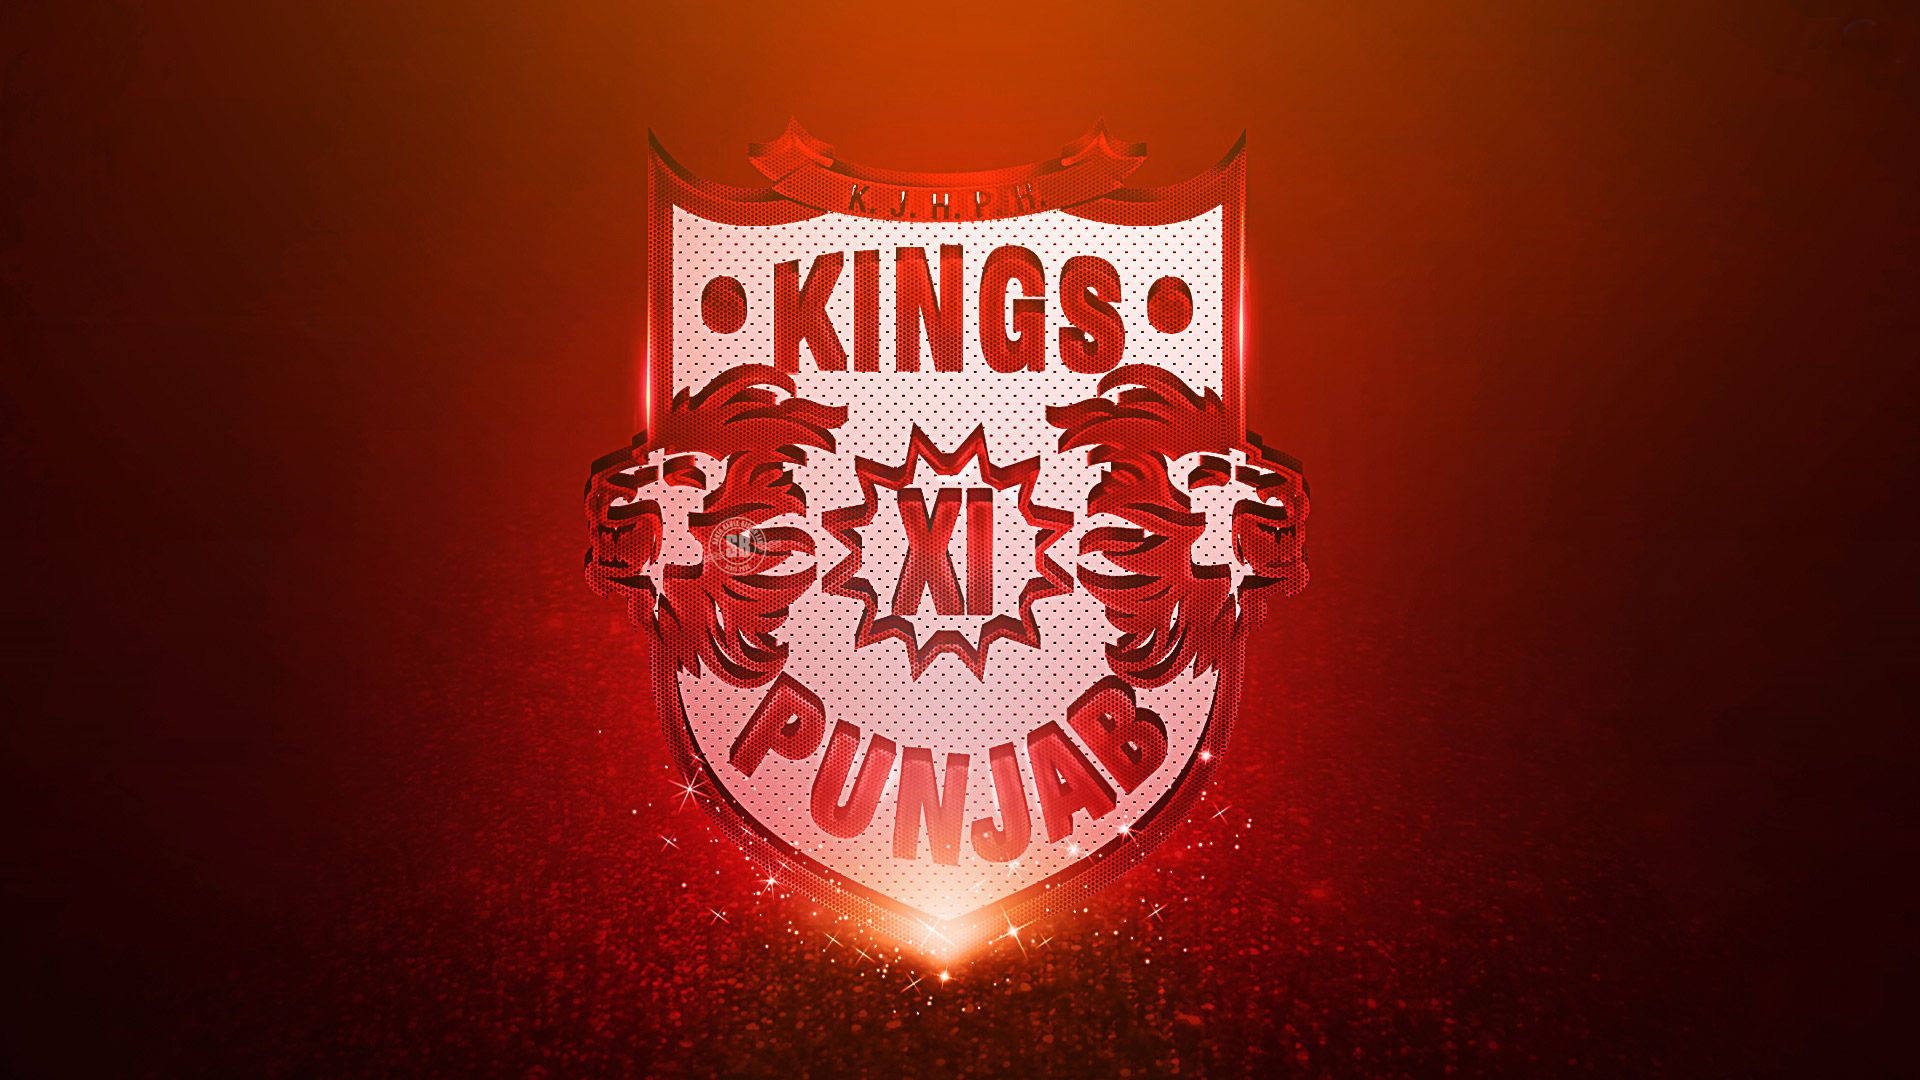 Ipl Team Kings Xi Punjab Cricket Wallpaper